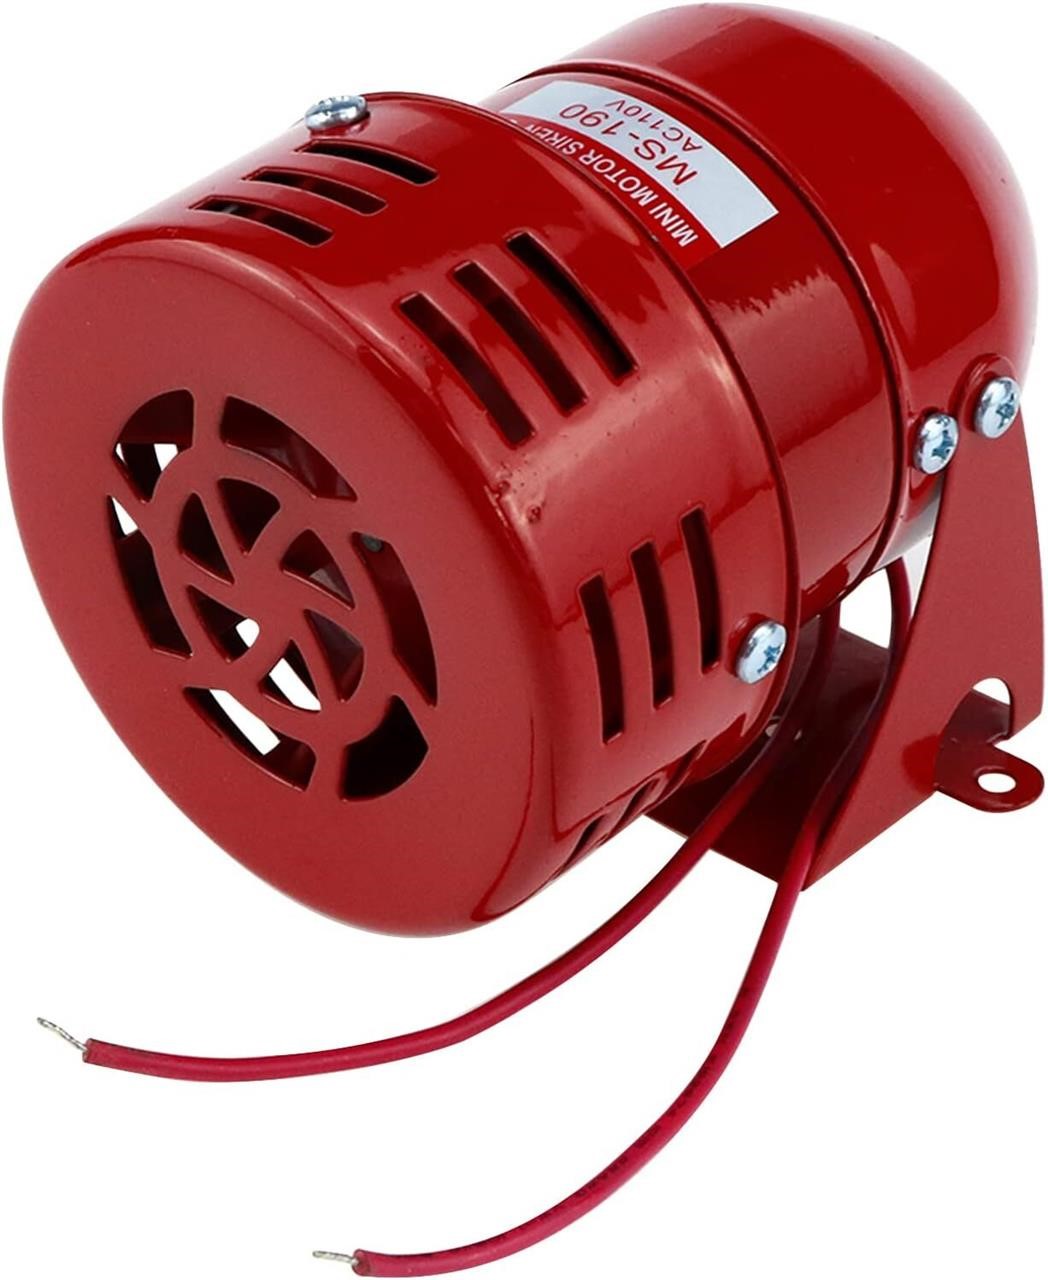 1Pc Red AC 110V 114dB Industrial Motor Alarm Bell